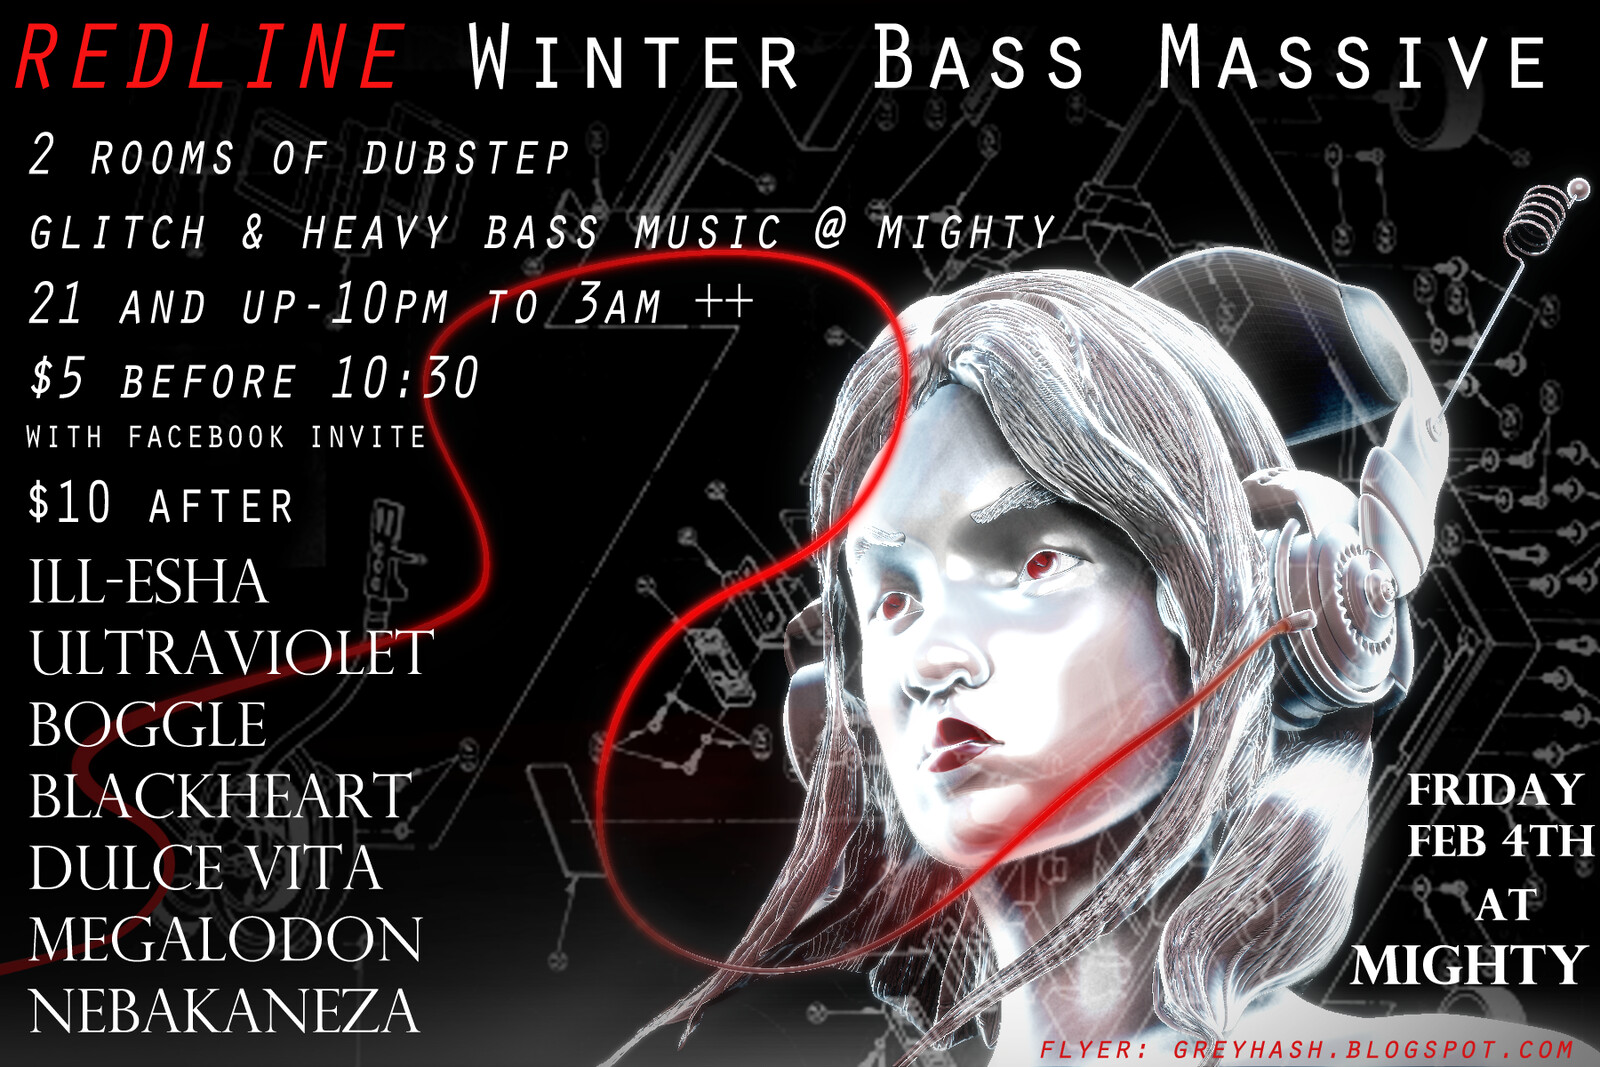 Redline WInter Bass Massive flyer